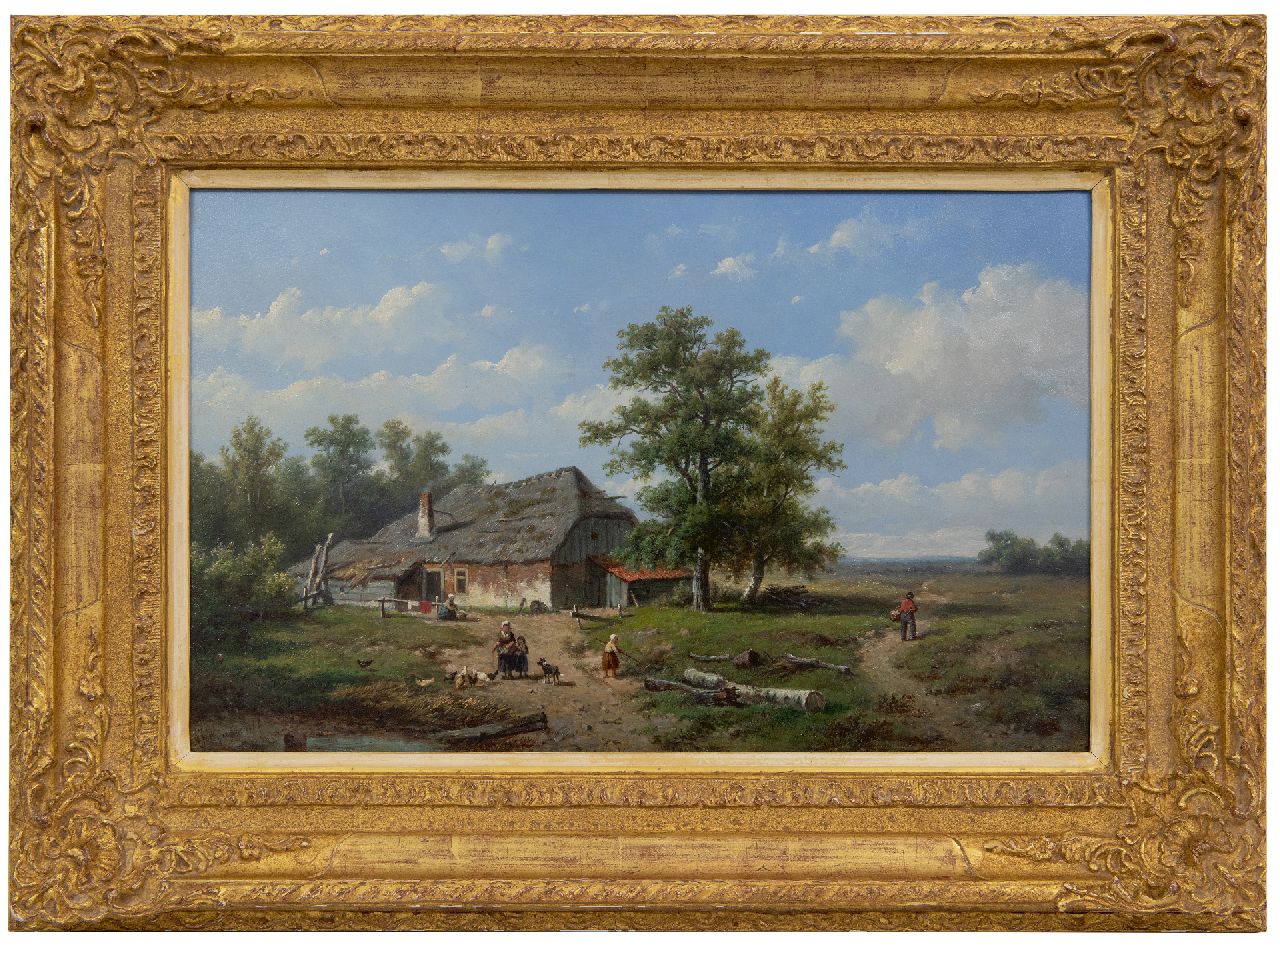 Wijngaerdt A.J. van | Anthonie Jacobus van Wijngaerdt | Schilderijen te koop aangeboden | Boerderij op het platteland, olieverf op paneel 27,5 x 43,5 cm, gesigneerd linksonder